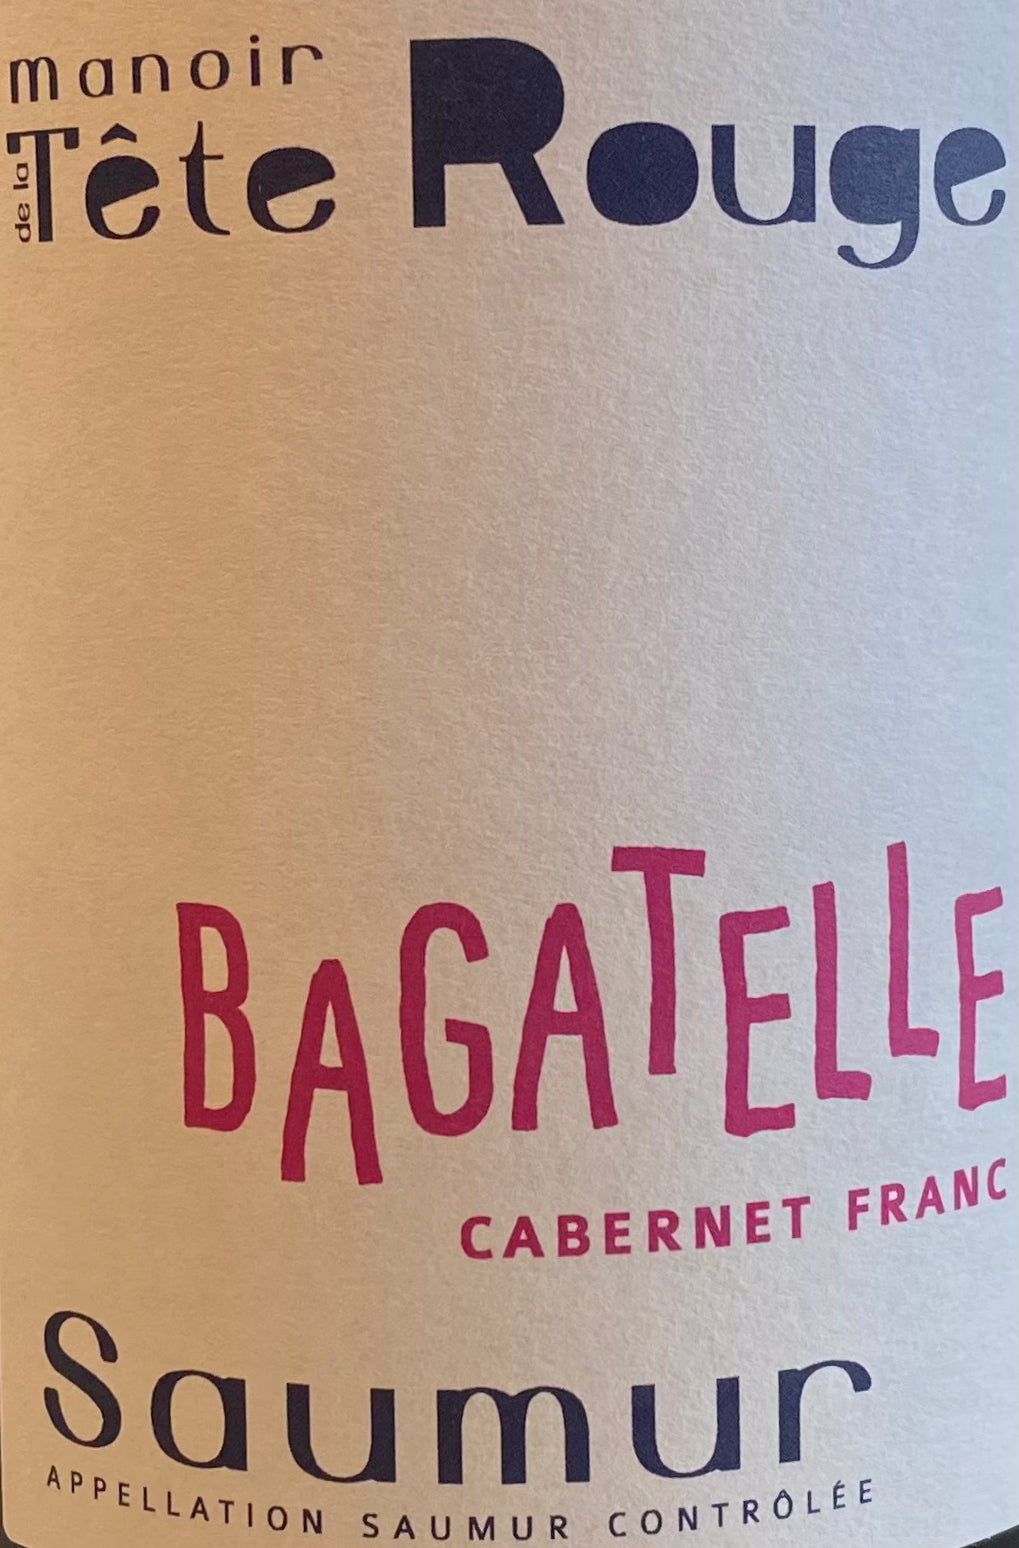 Manoir de la Tete 'Bagatelle' - Saumur